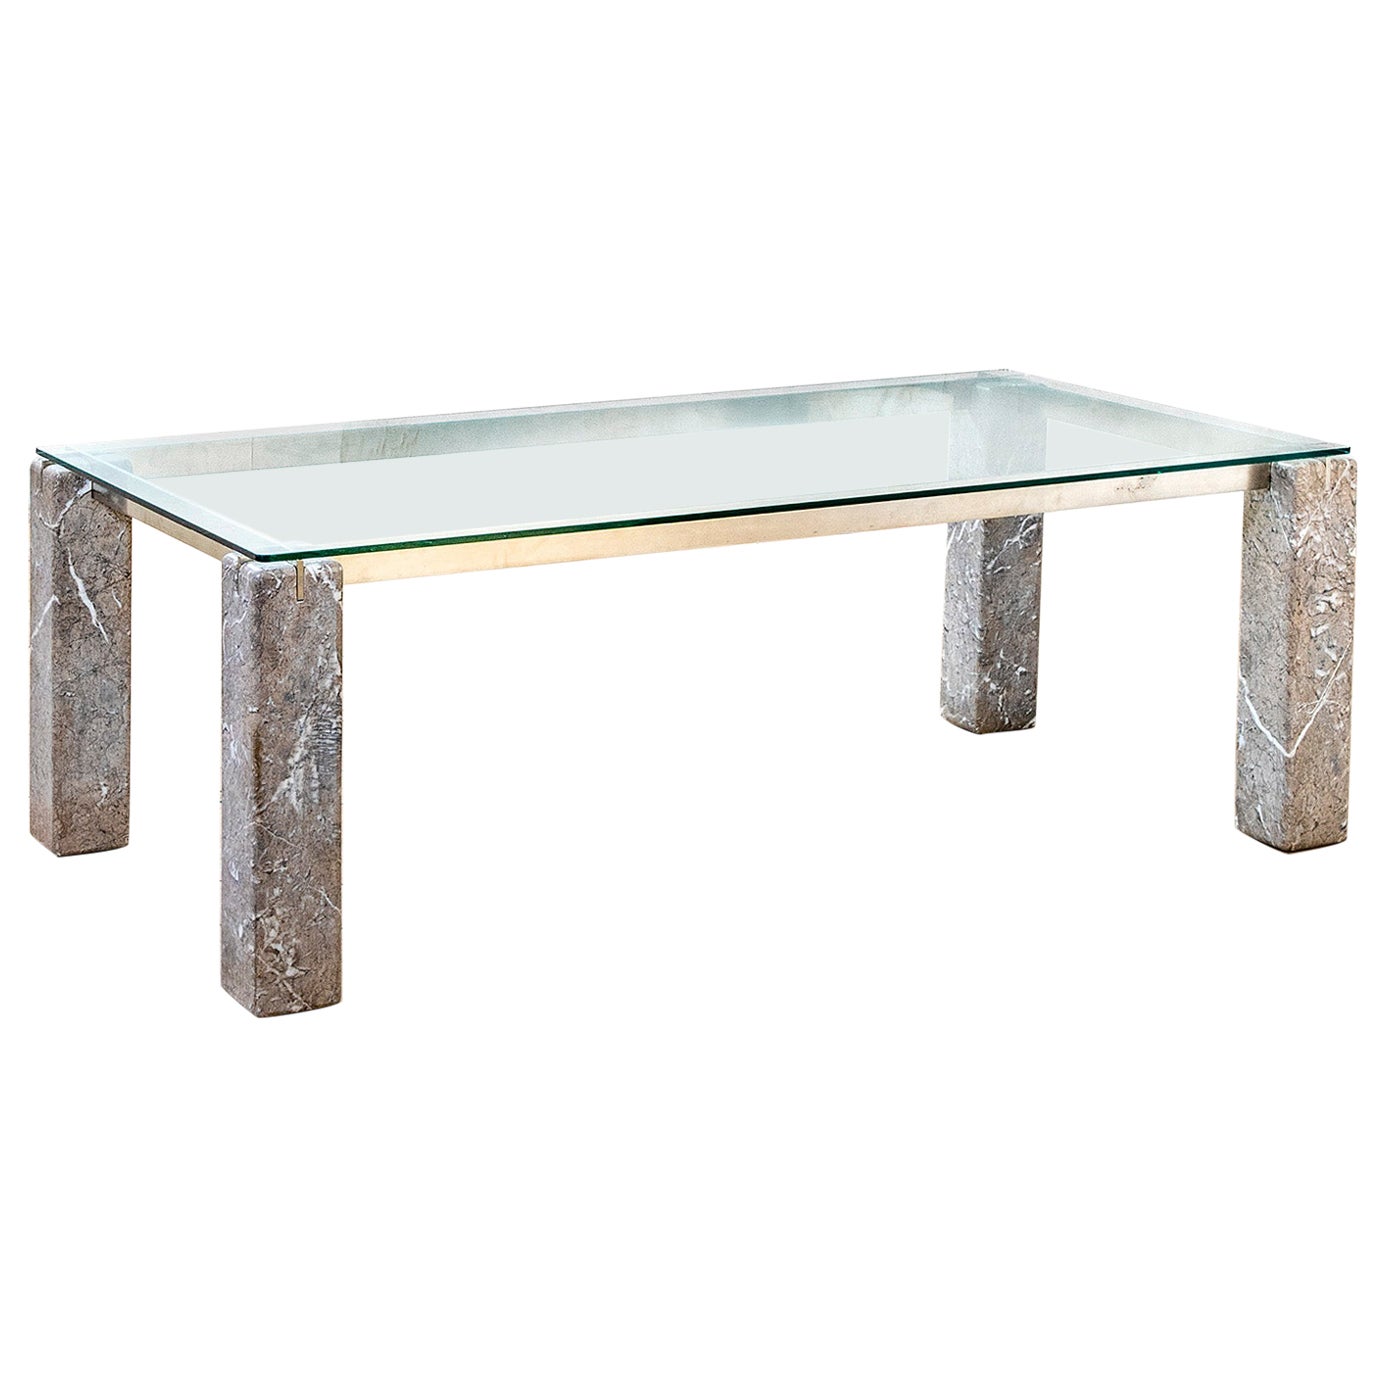 20th Century Renato Polidori Skipper Table Mod. Faraone Marble and Crystal, 80s For Sale